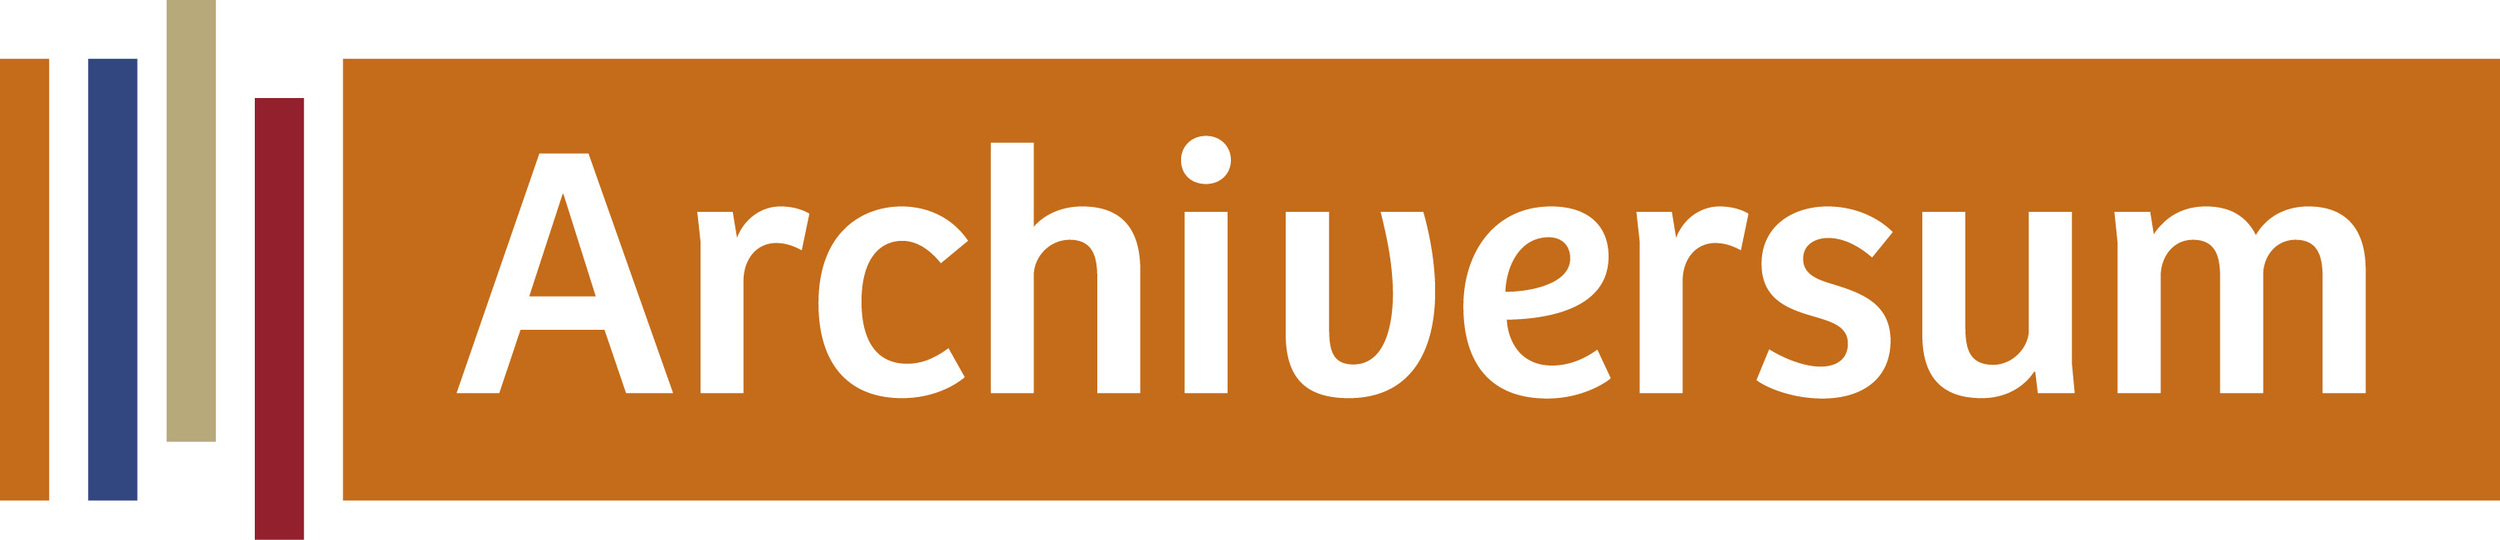 Archiversum_Logo_col